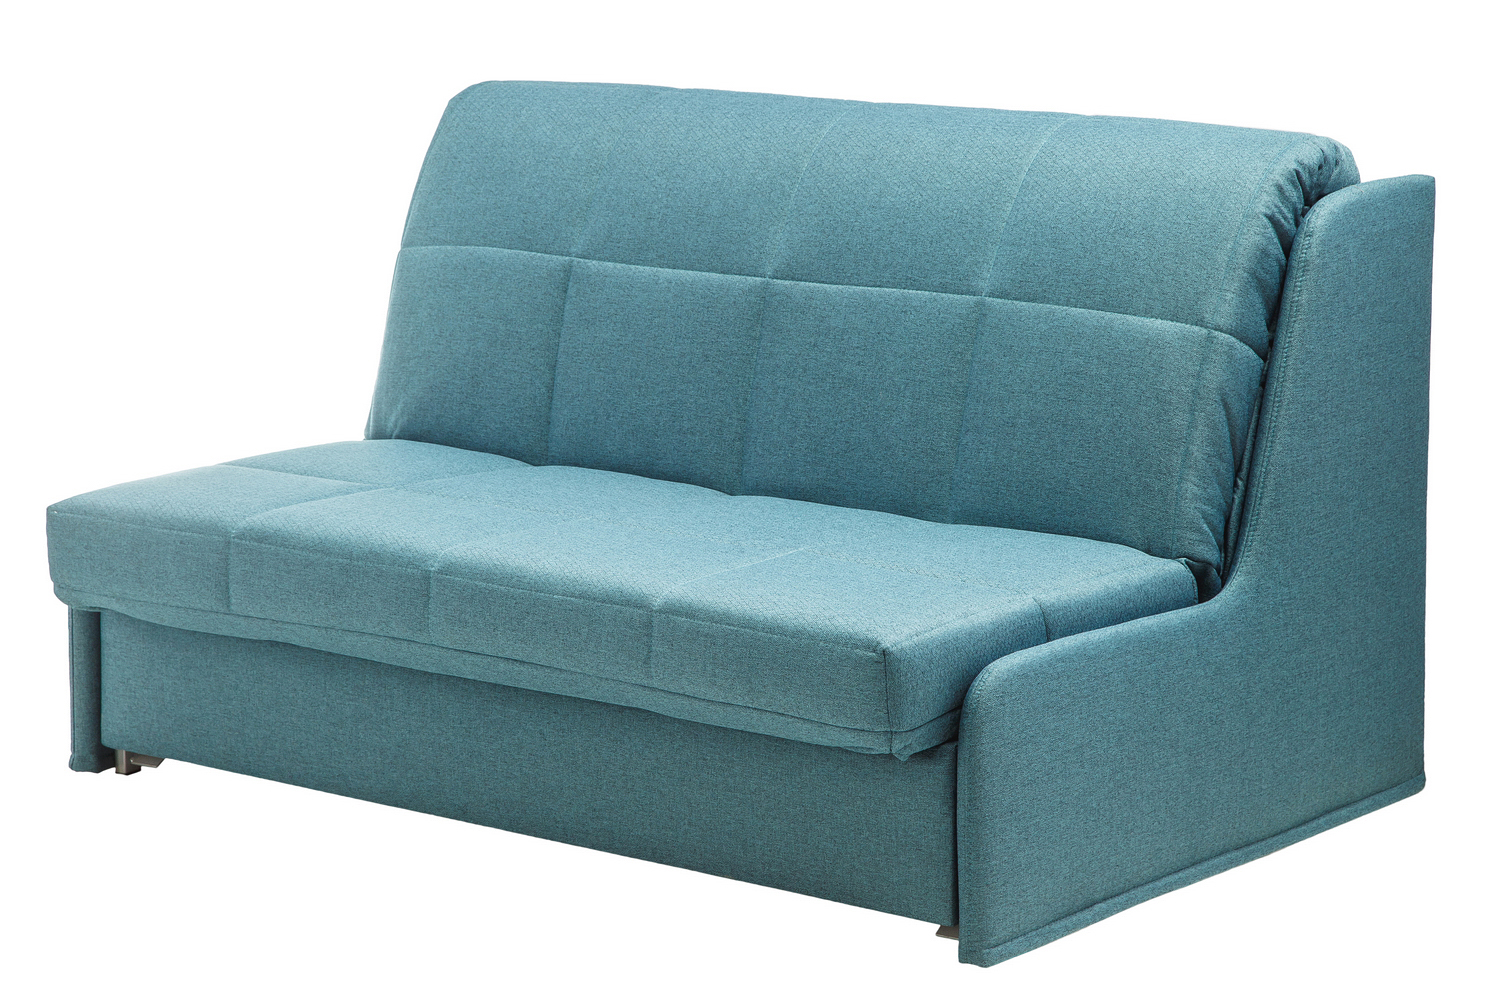 Выкатной диван без подлокотников: маленькие 120 см, узкие, выдвижные вперед